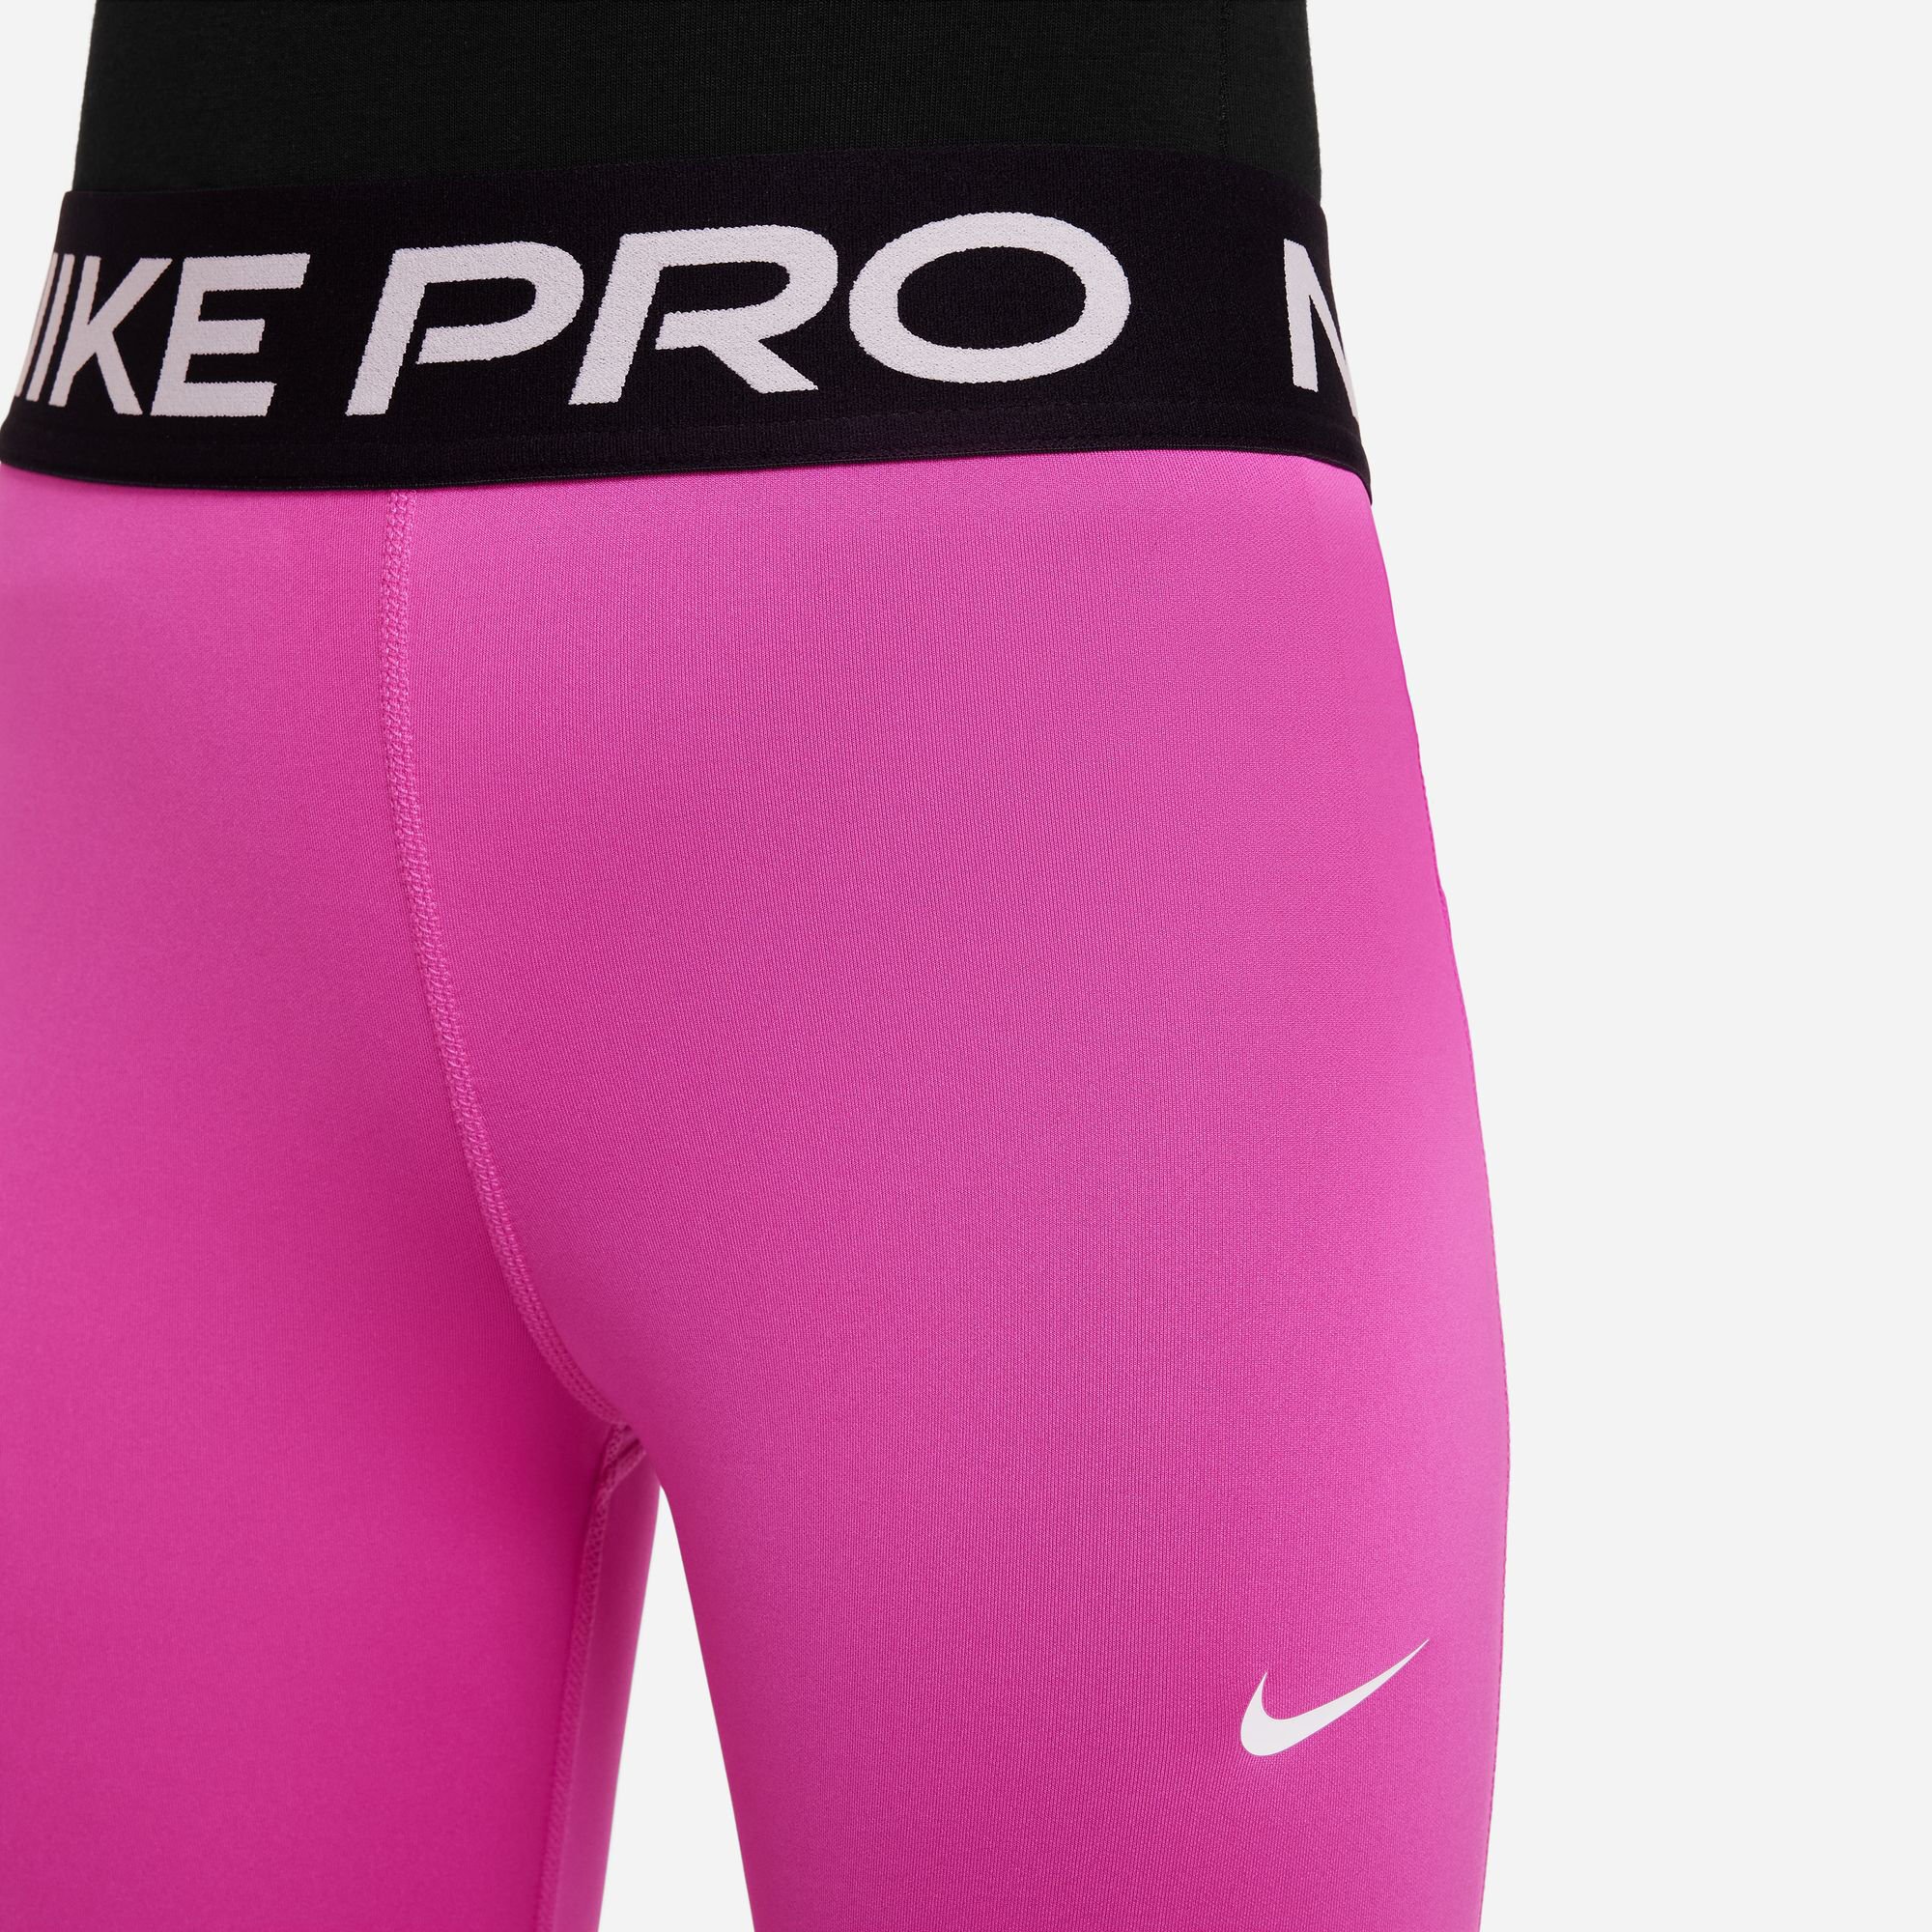 Højttaler vakuum bunker Nike Pro 3/4 Stramme Løbebukser Pige - Pink, Sort køb online | Tennis-Point